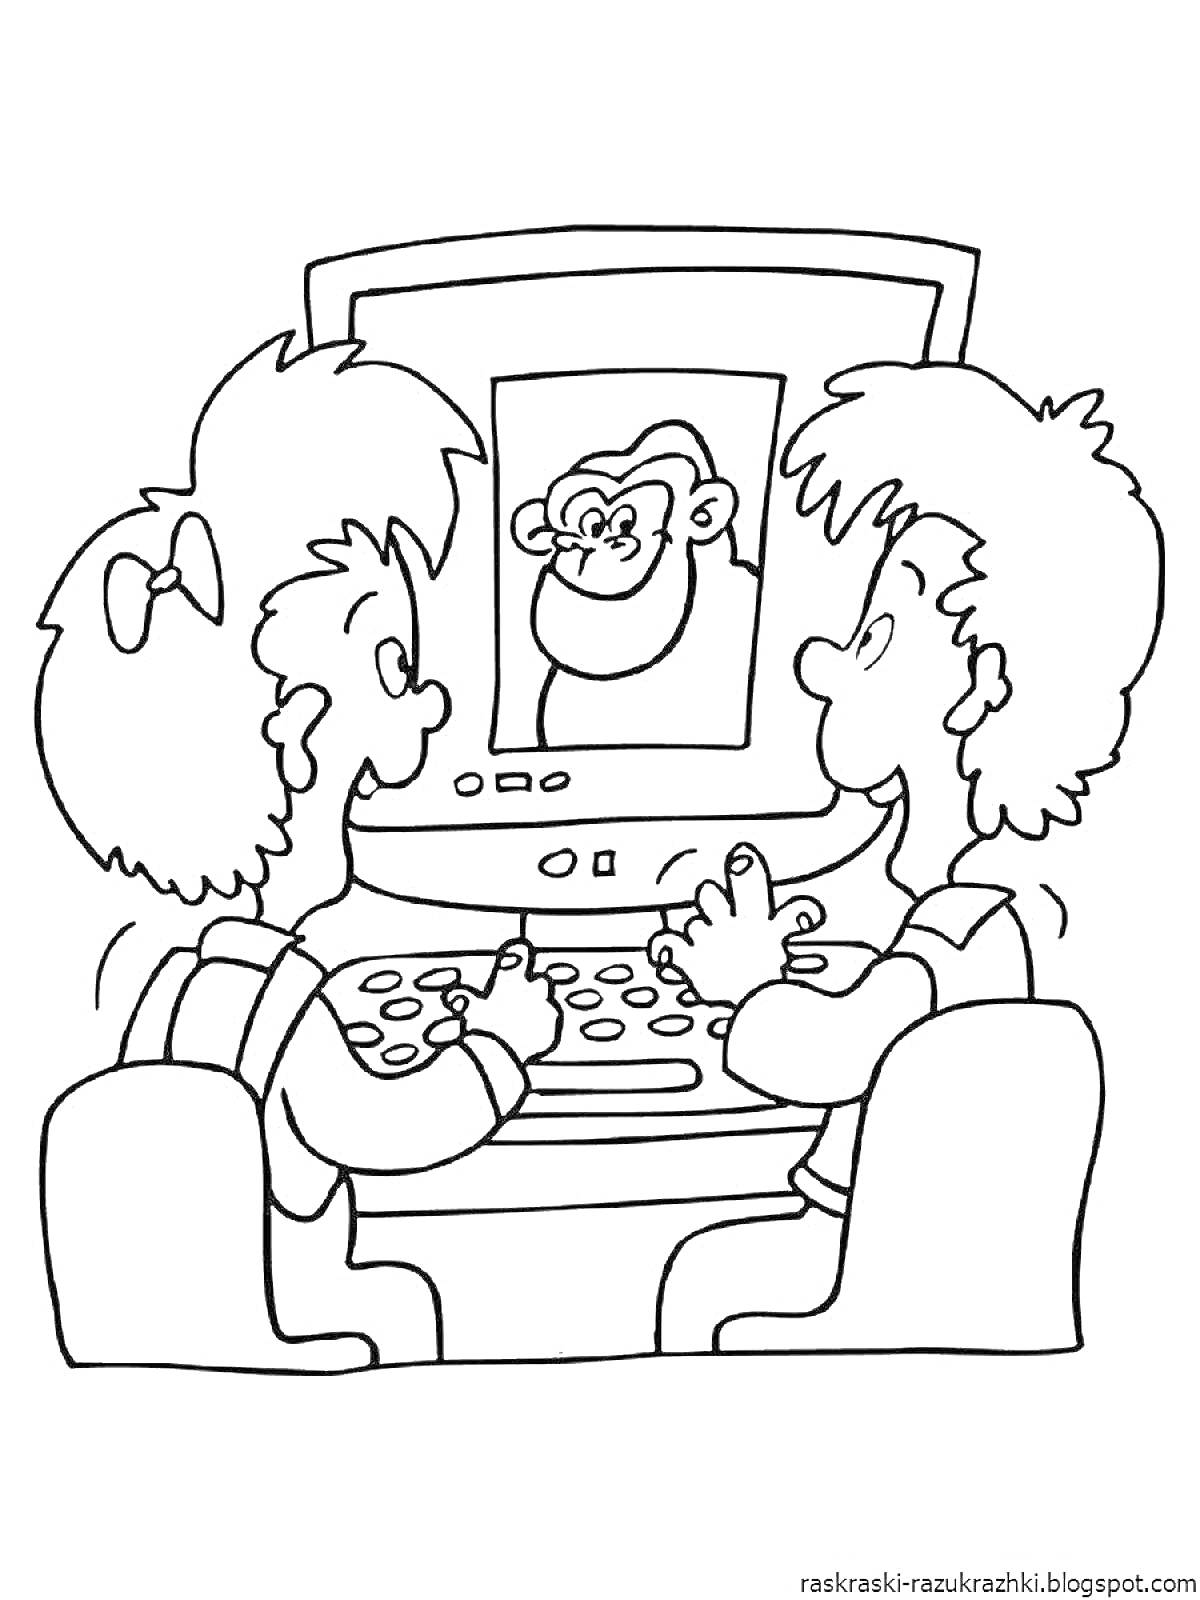 Раскраска Дети за компьютером с изображением обезьяны на экране